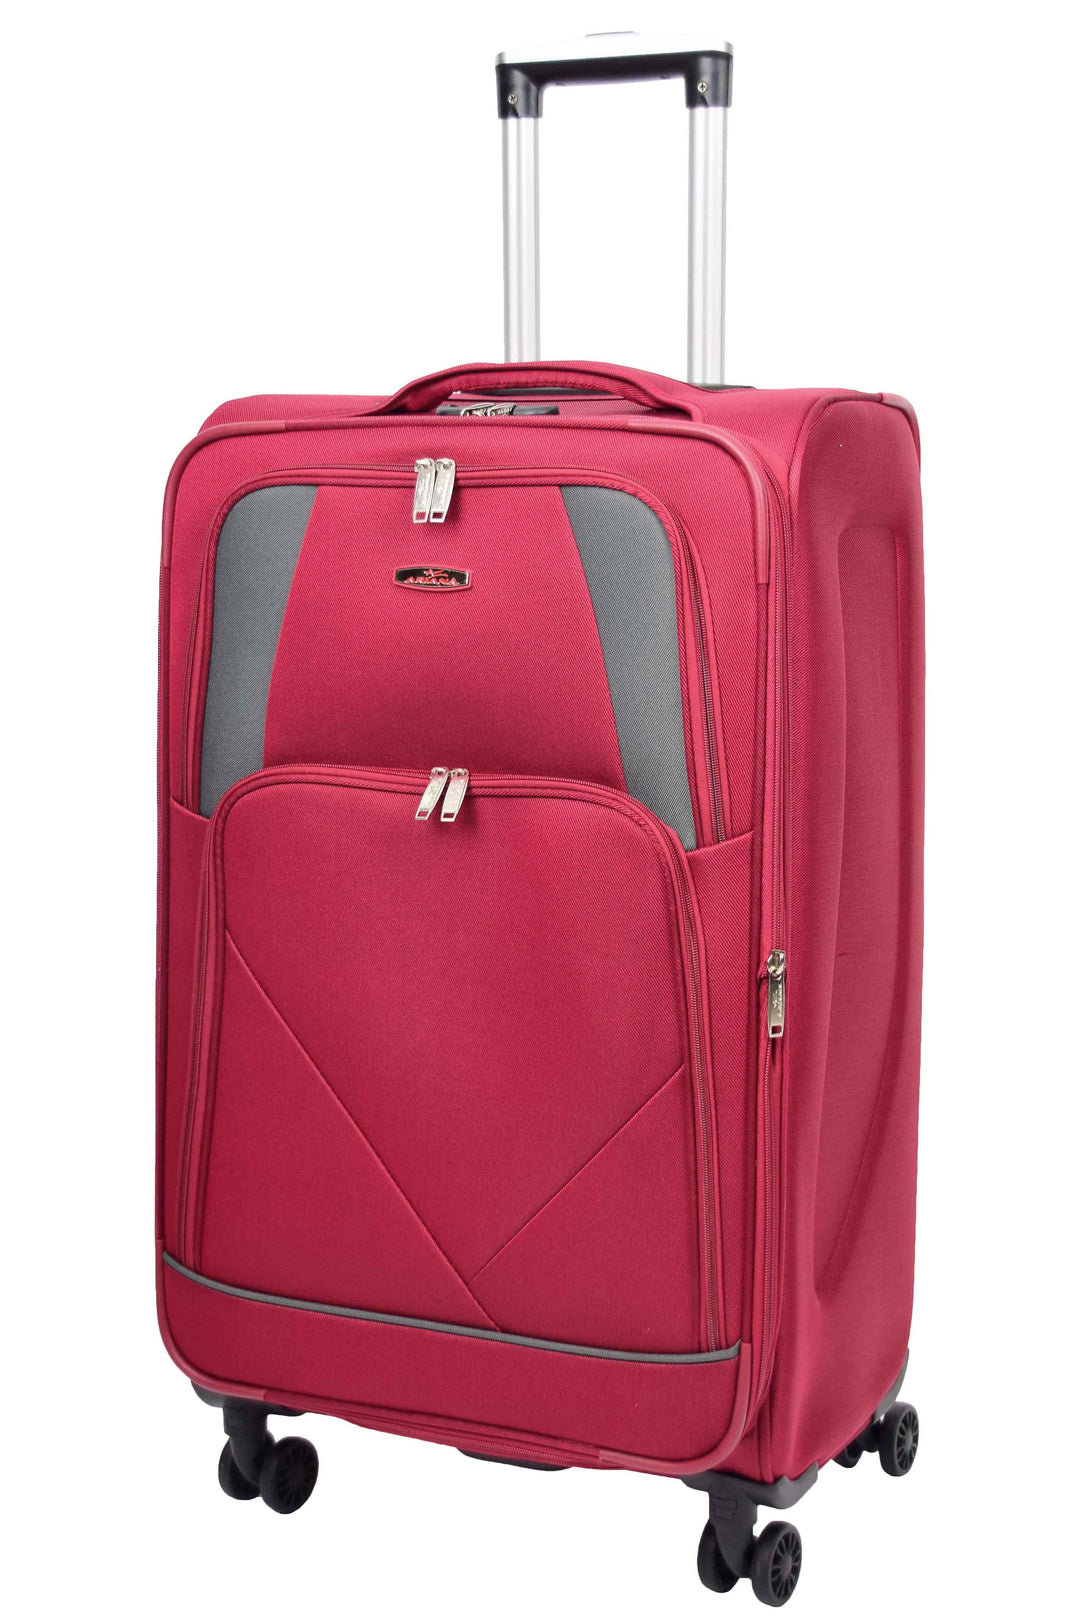 Guardian Lightweight Suitcase 32